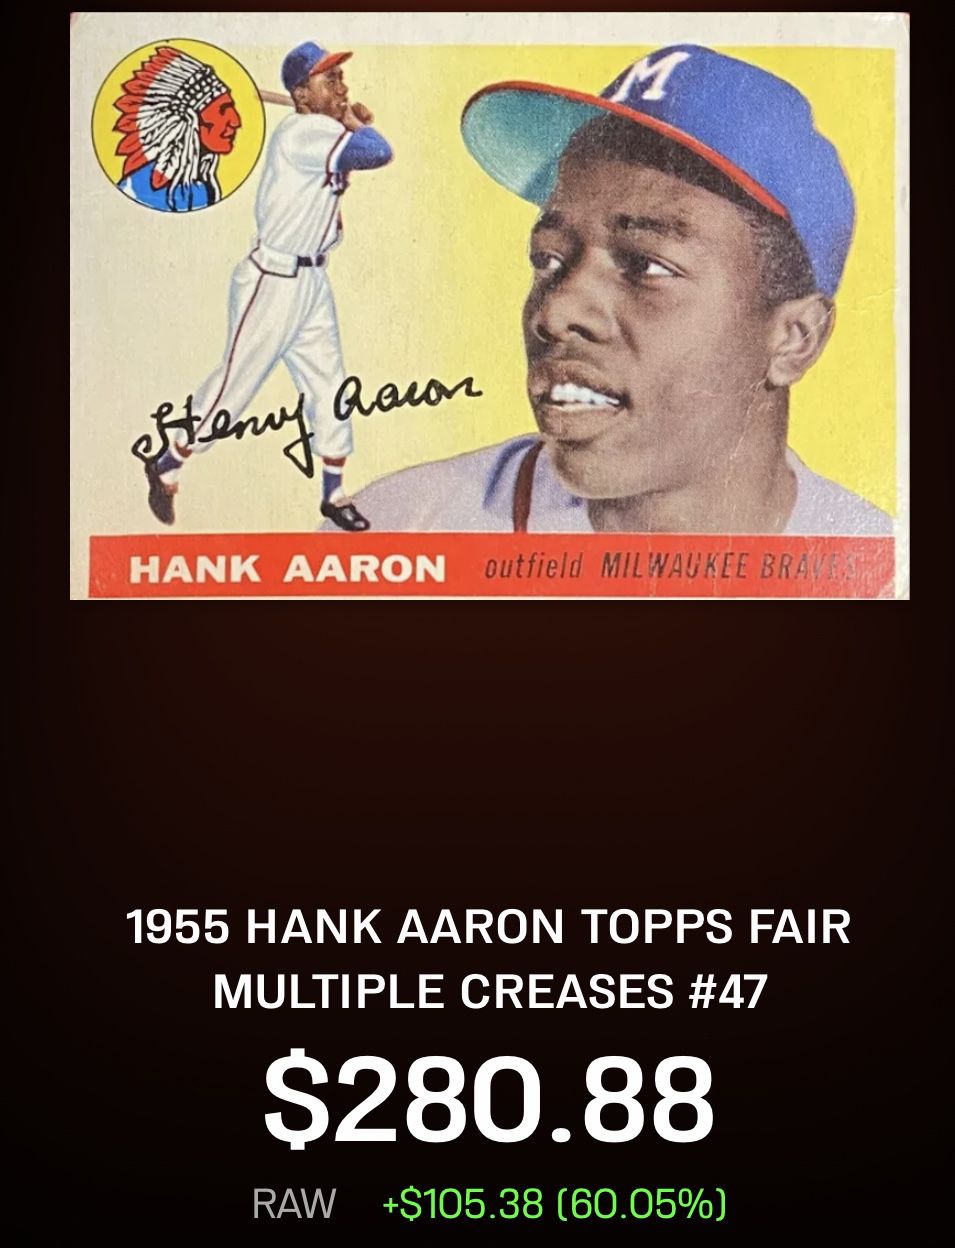 Hank arron baseball card pretty good condition 